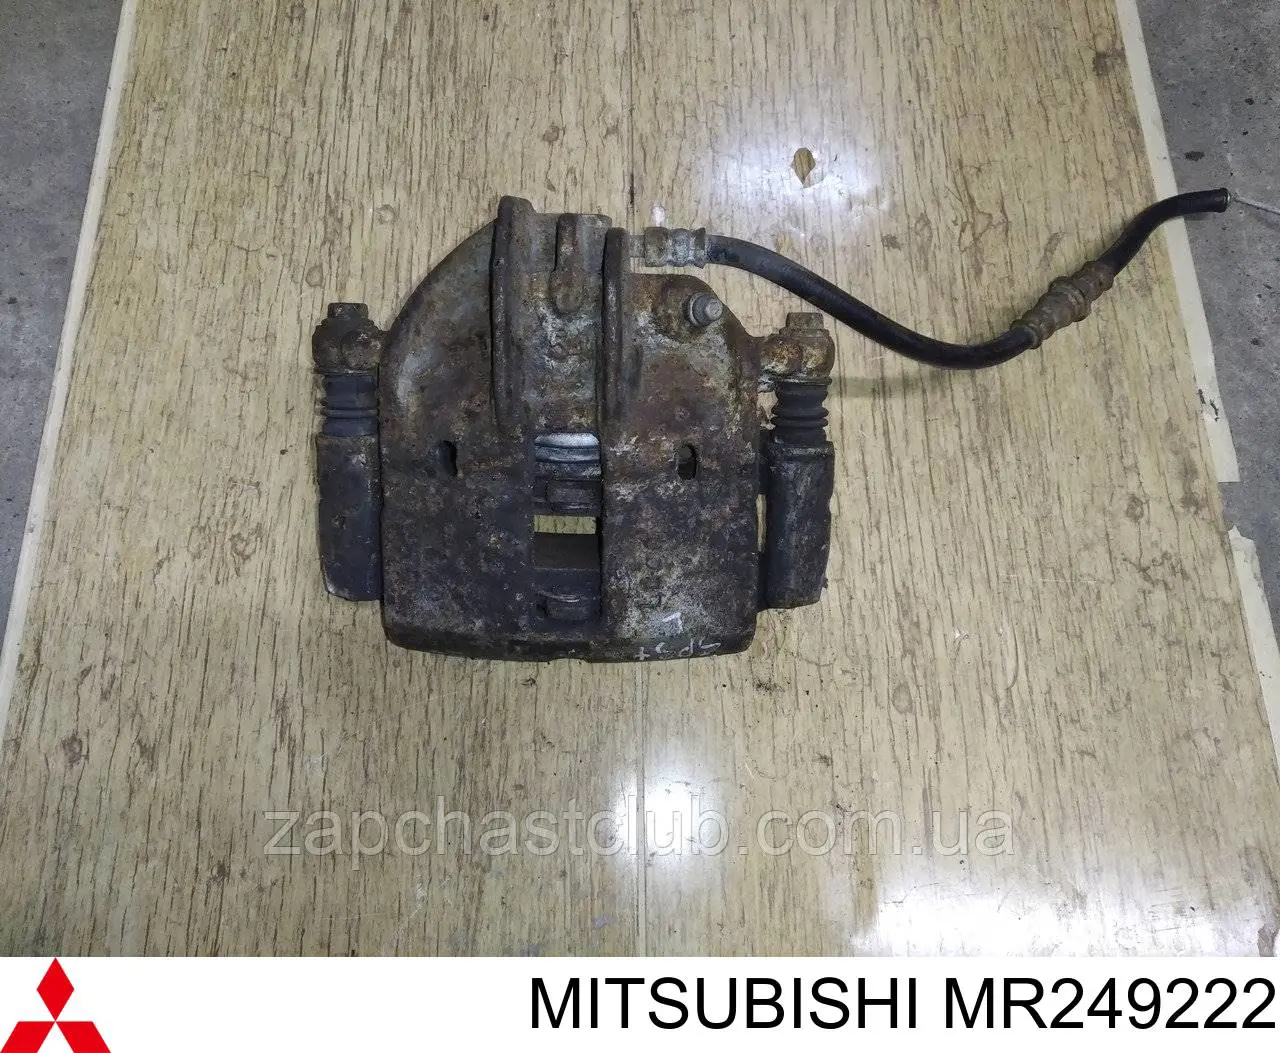 MR249222 Mitsubishi suporte do freio dianteiro esquerdo